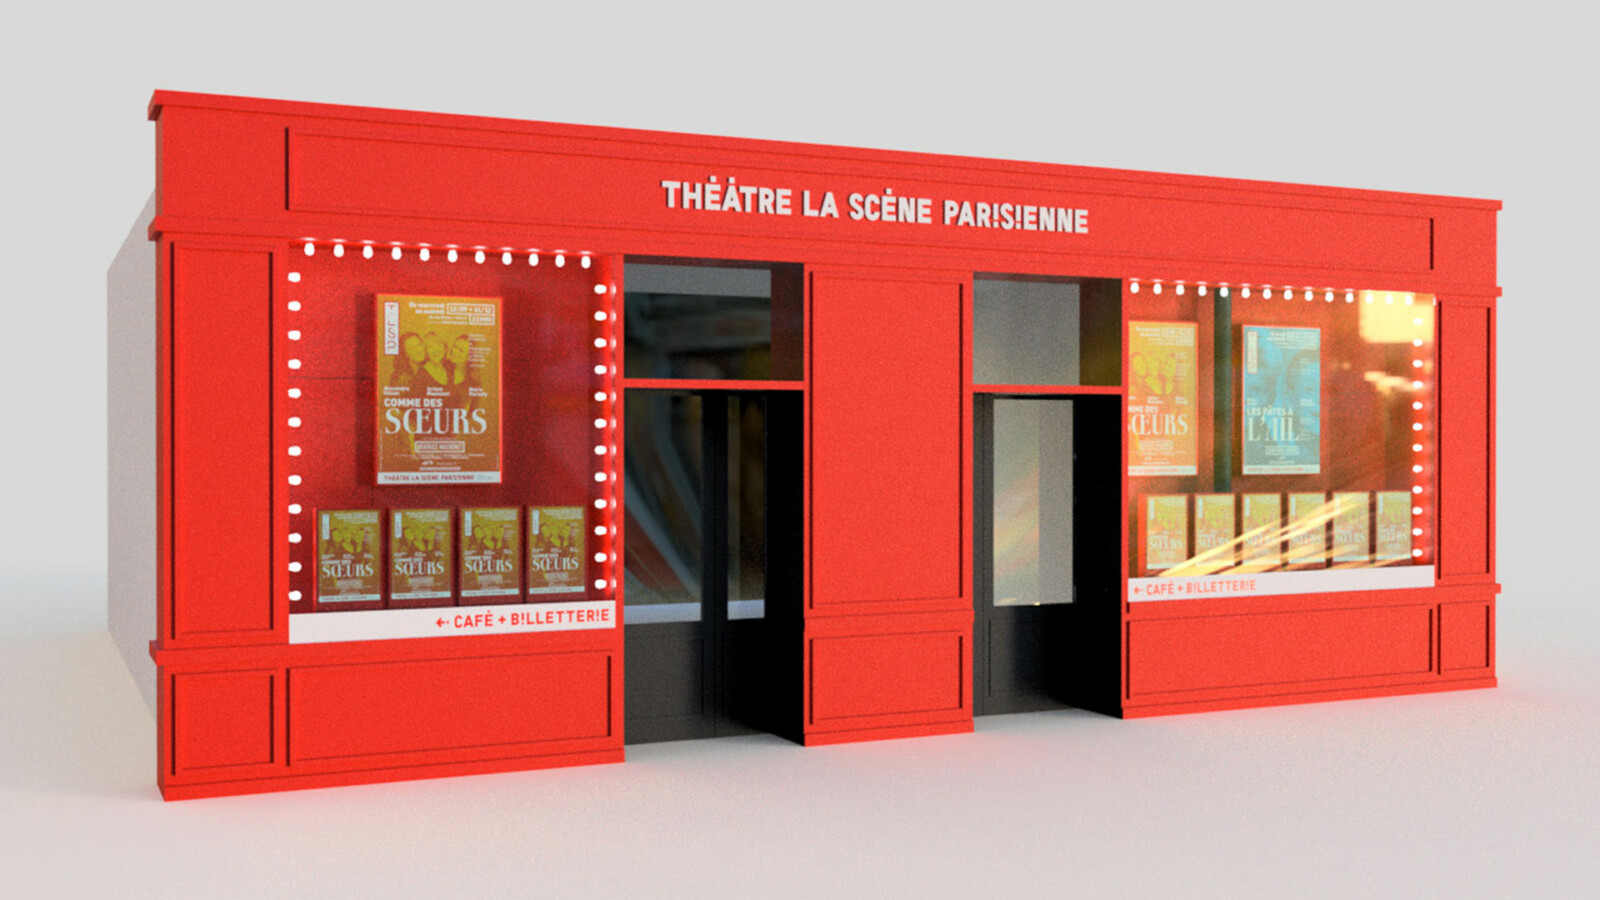 Vue 3D de la façade du Théâtre de la seine Parisienne, la devanture est rouge et le nom du théâtre surmonte les portes d’entrée, de grandes vitres laissent voir une sélection d’affiches de diverses tailles placées derrière.